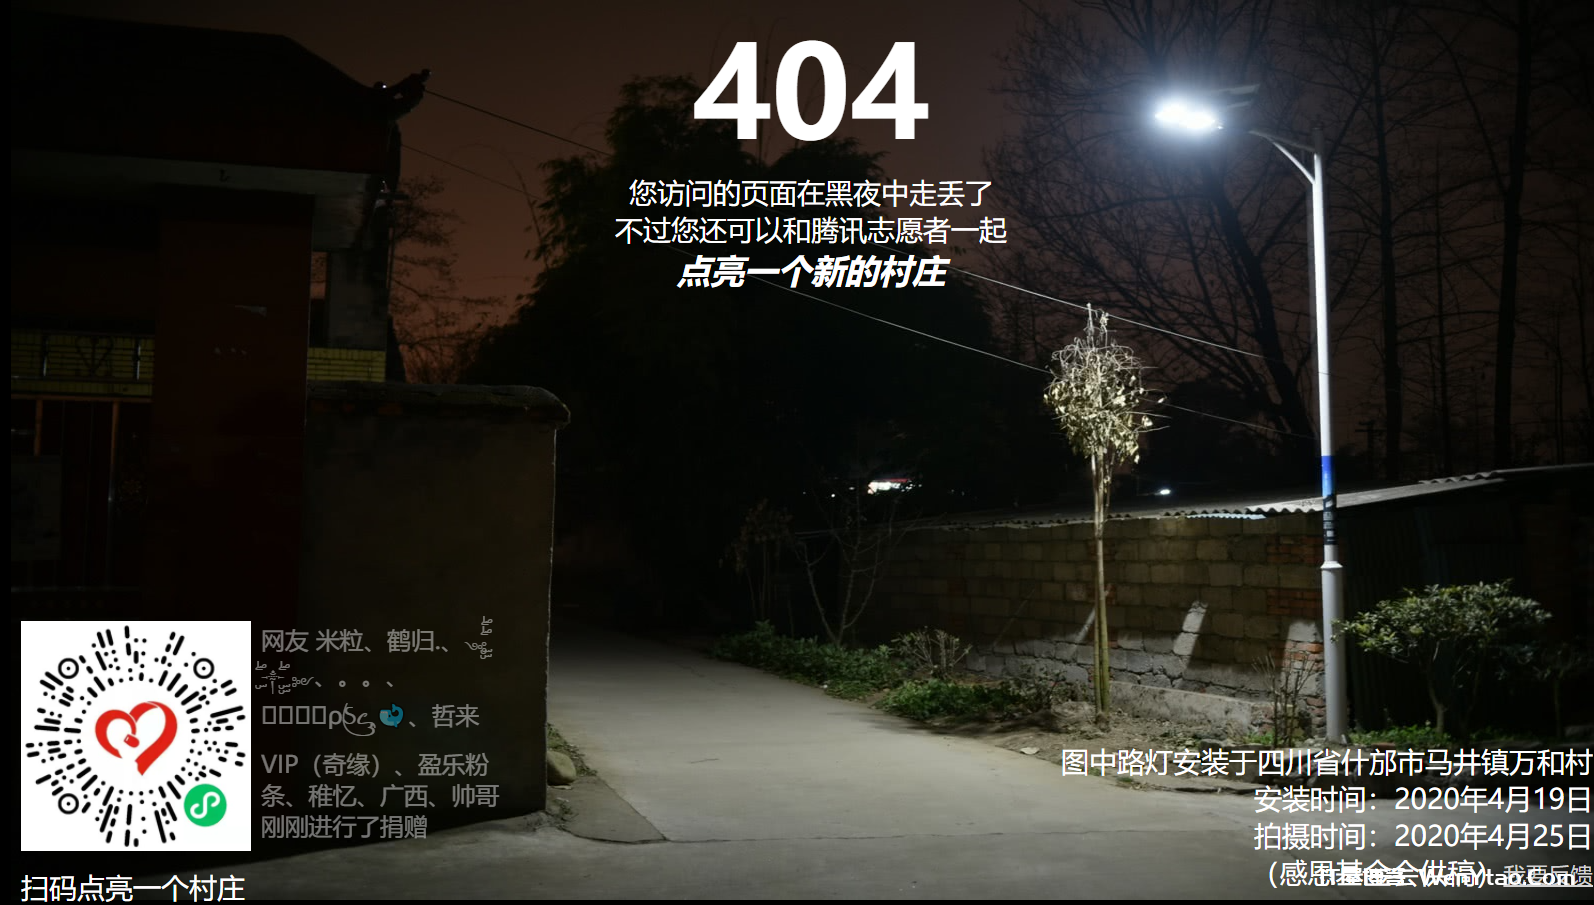 腾讯云CDN支持一键接入腾讯公益404